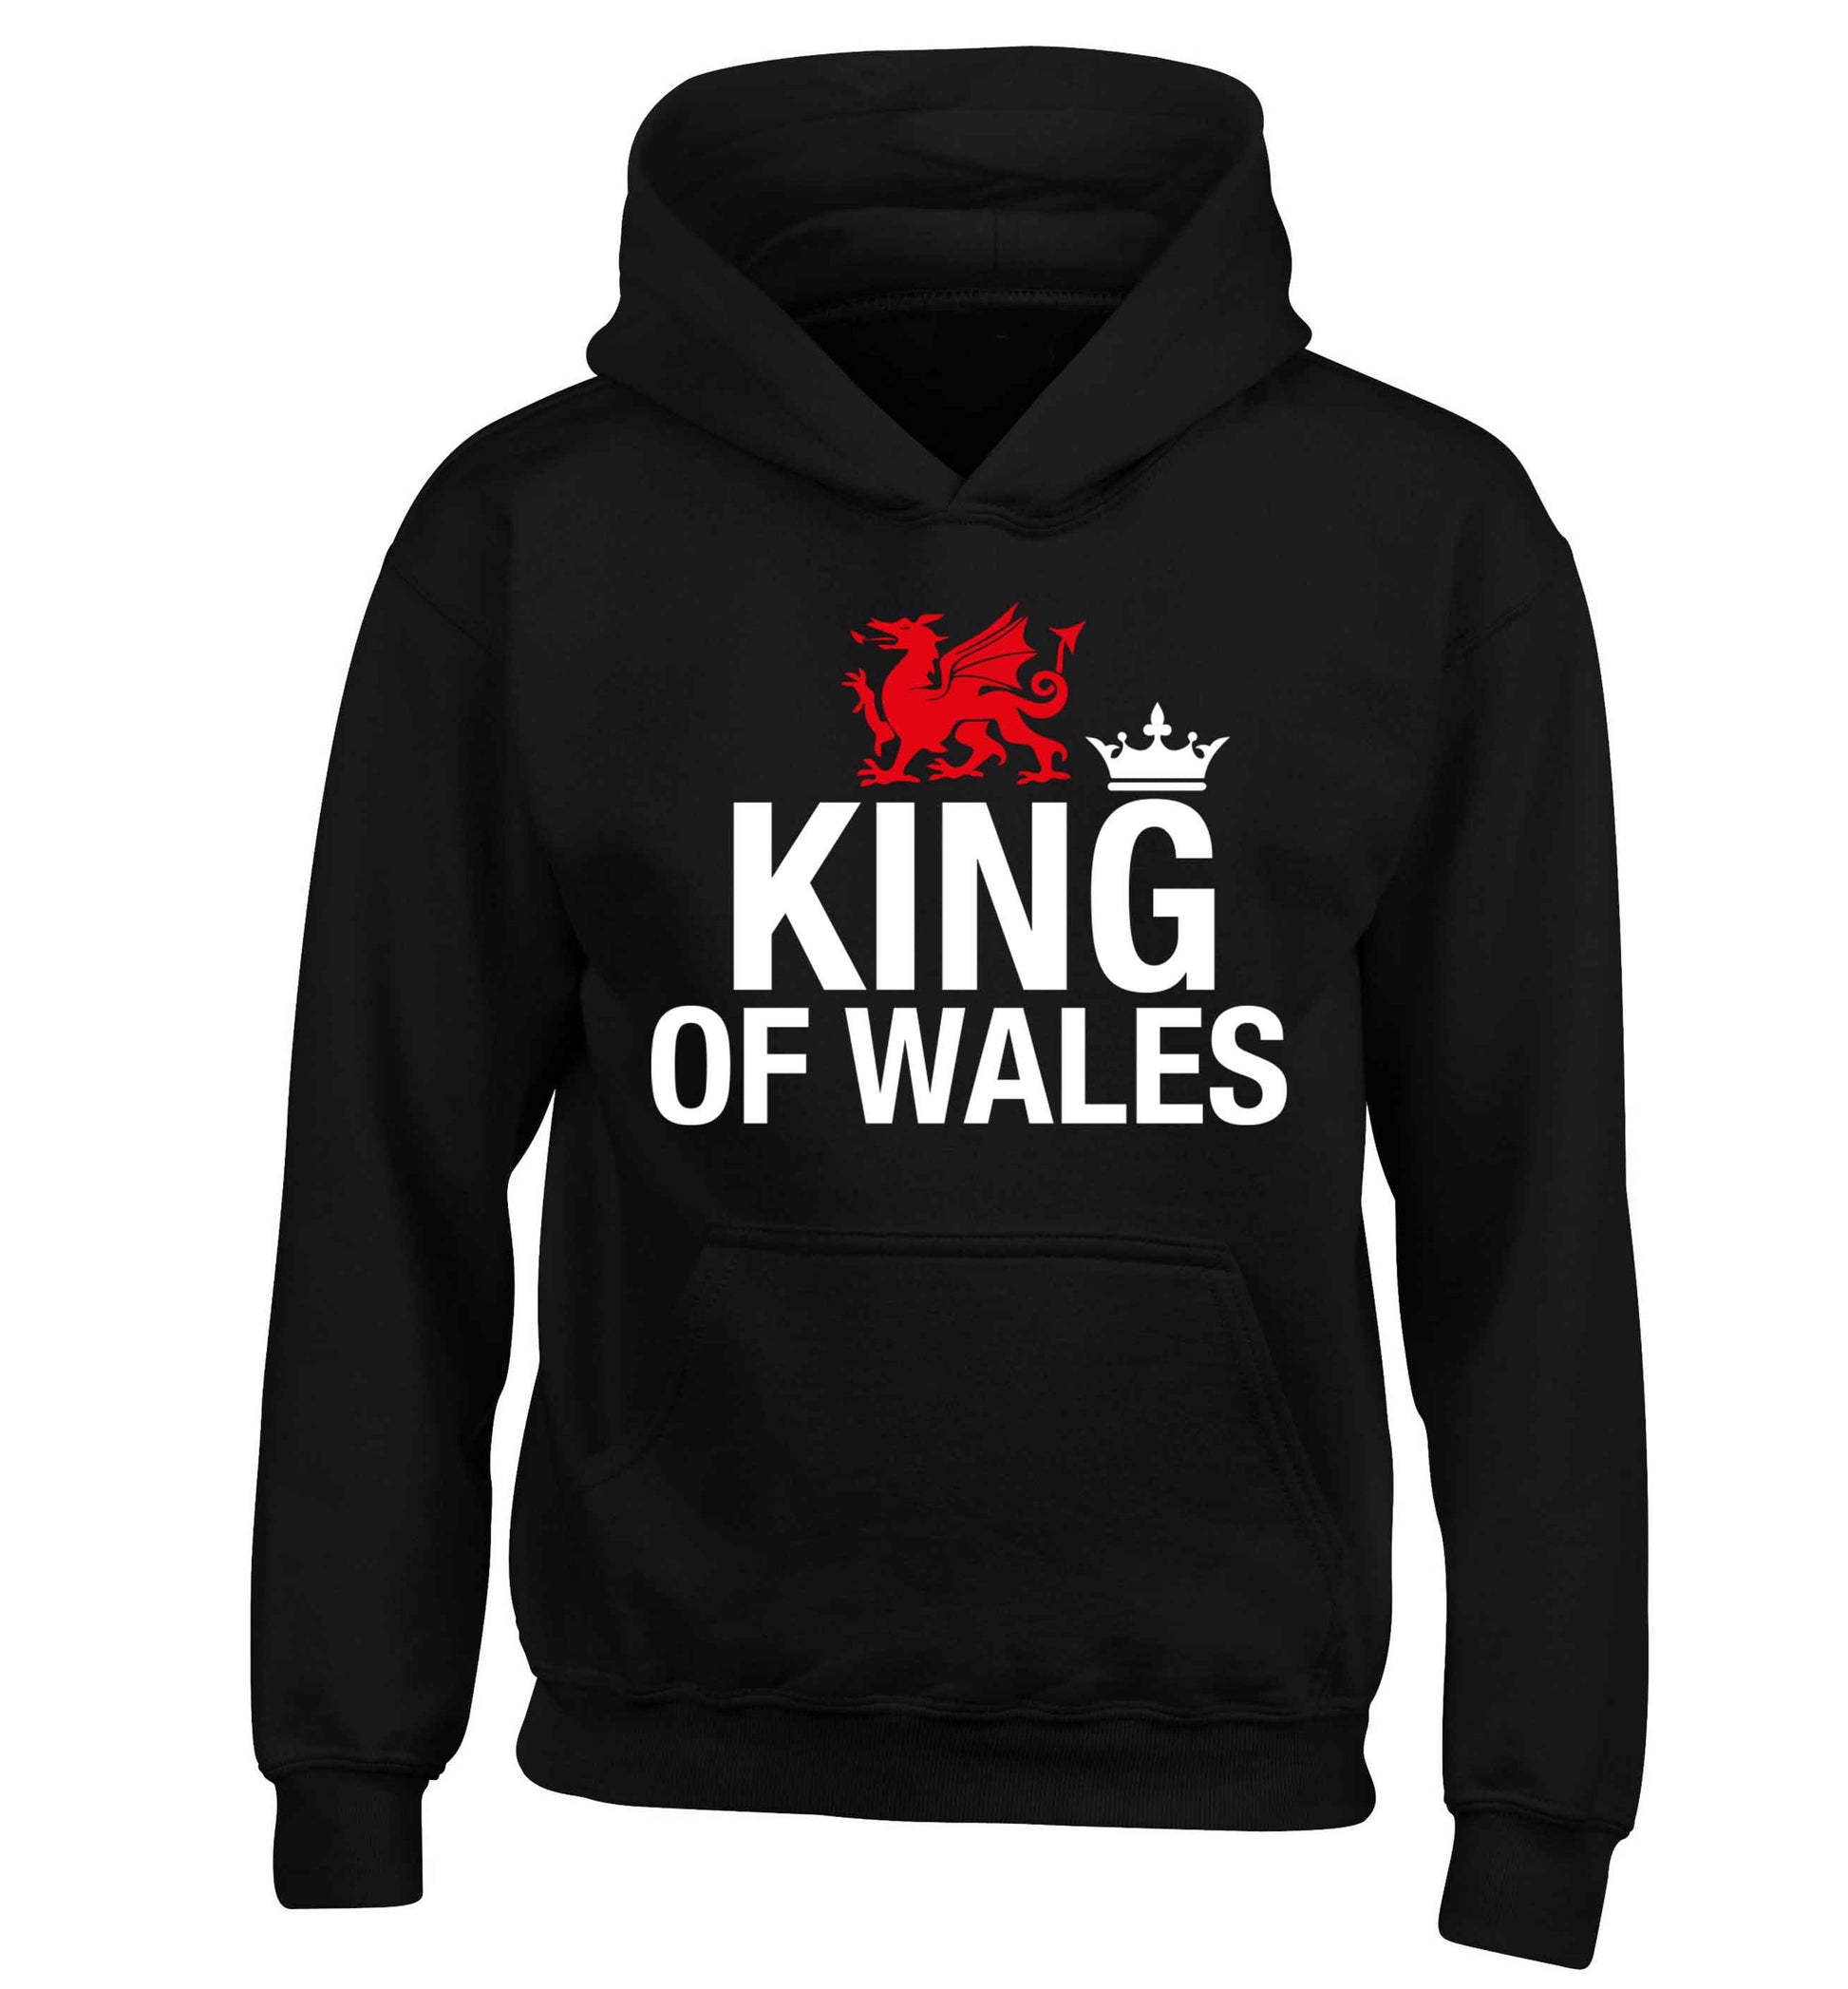 King of Wales children's black hoodie 12-13 Years